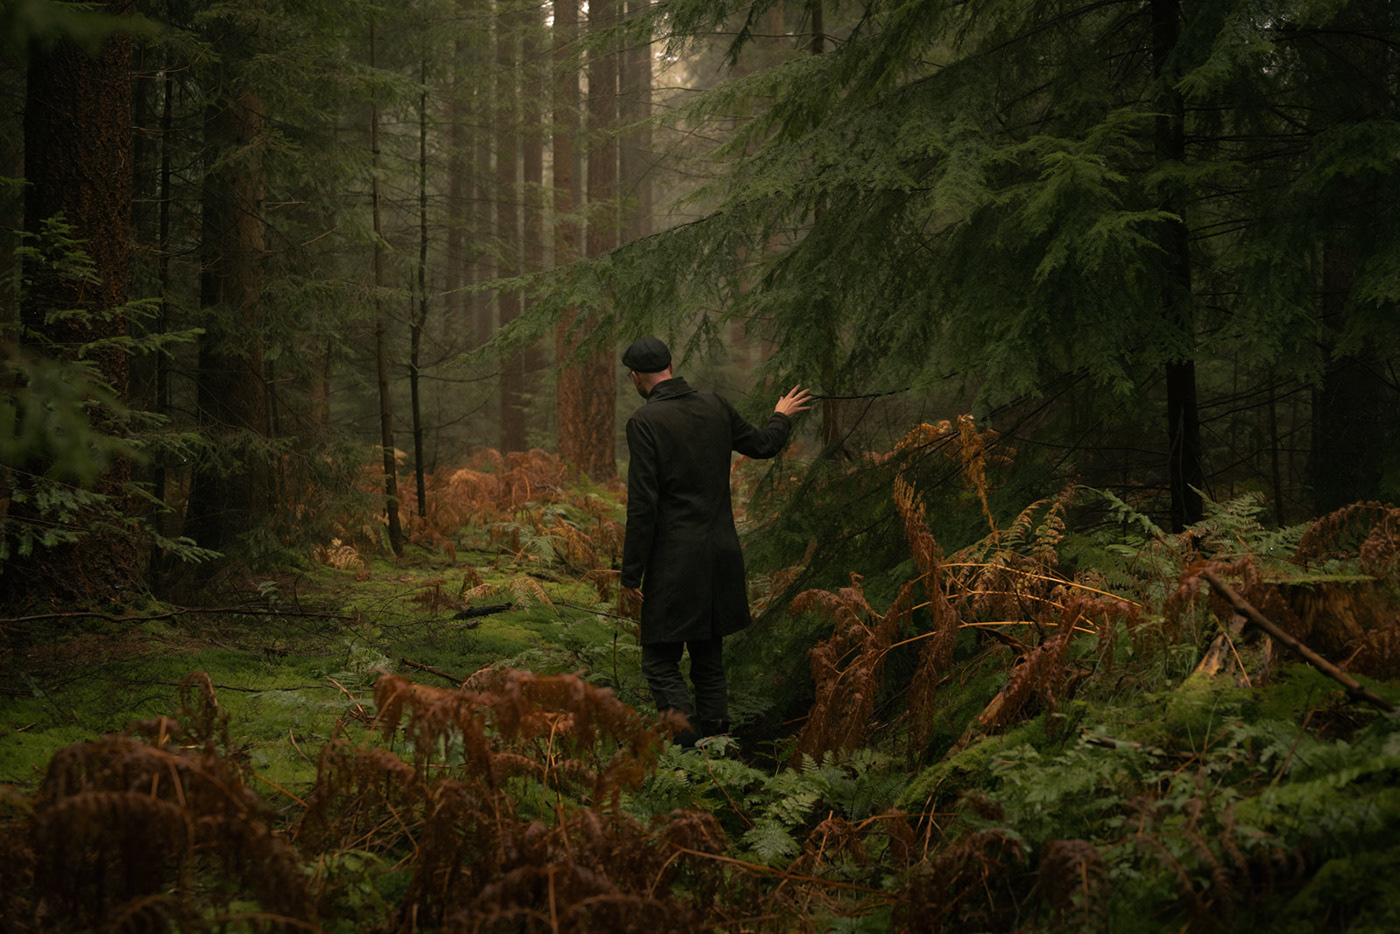 autumn forest self portrait portrait Landscape landscape photography trees Photography  cinematography cinematic